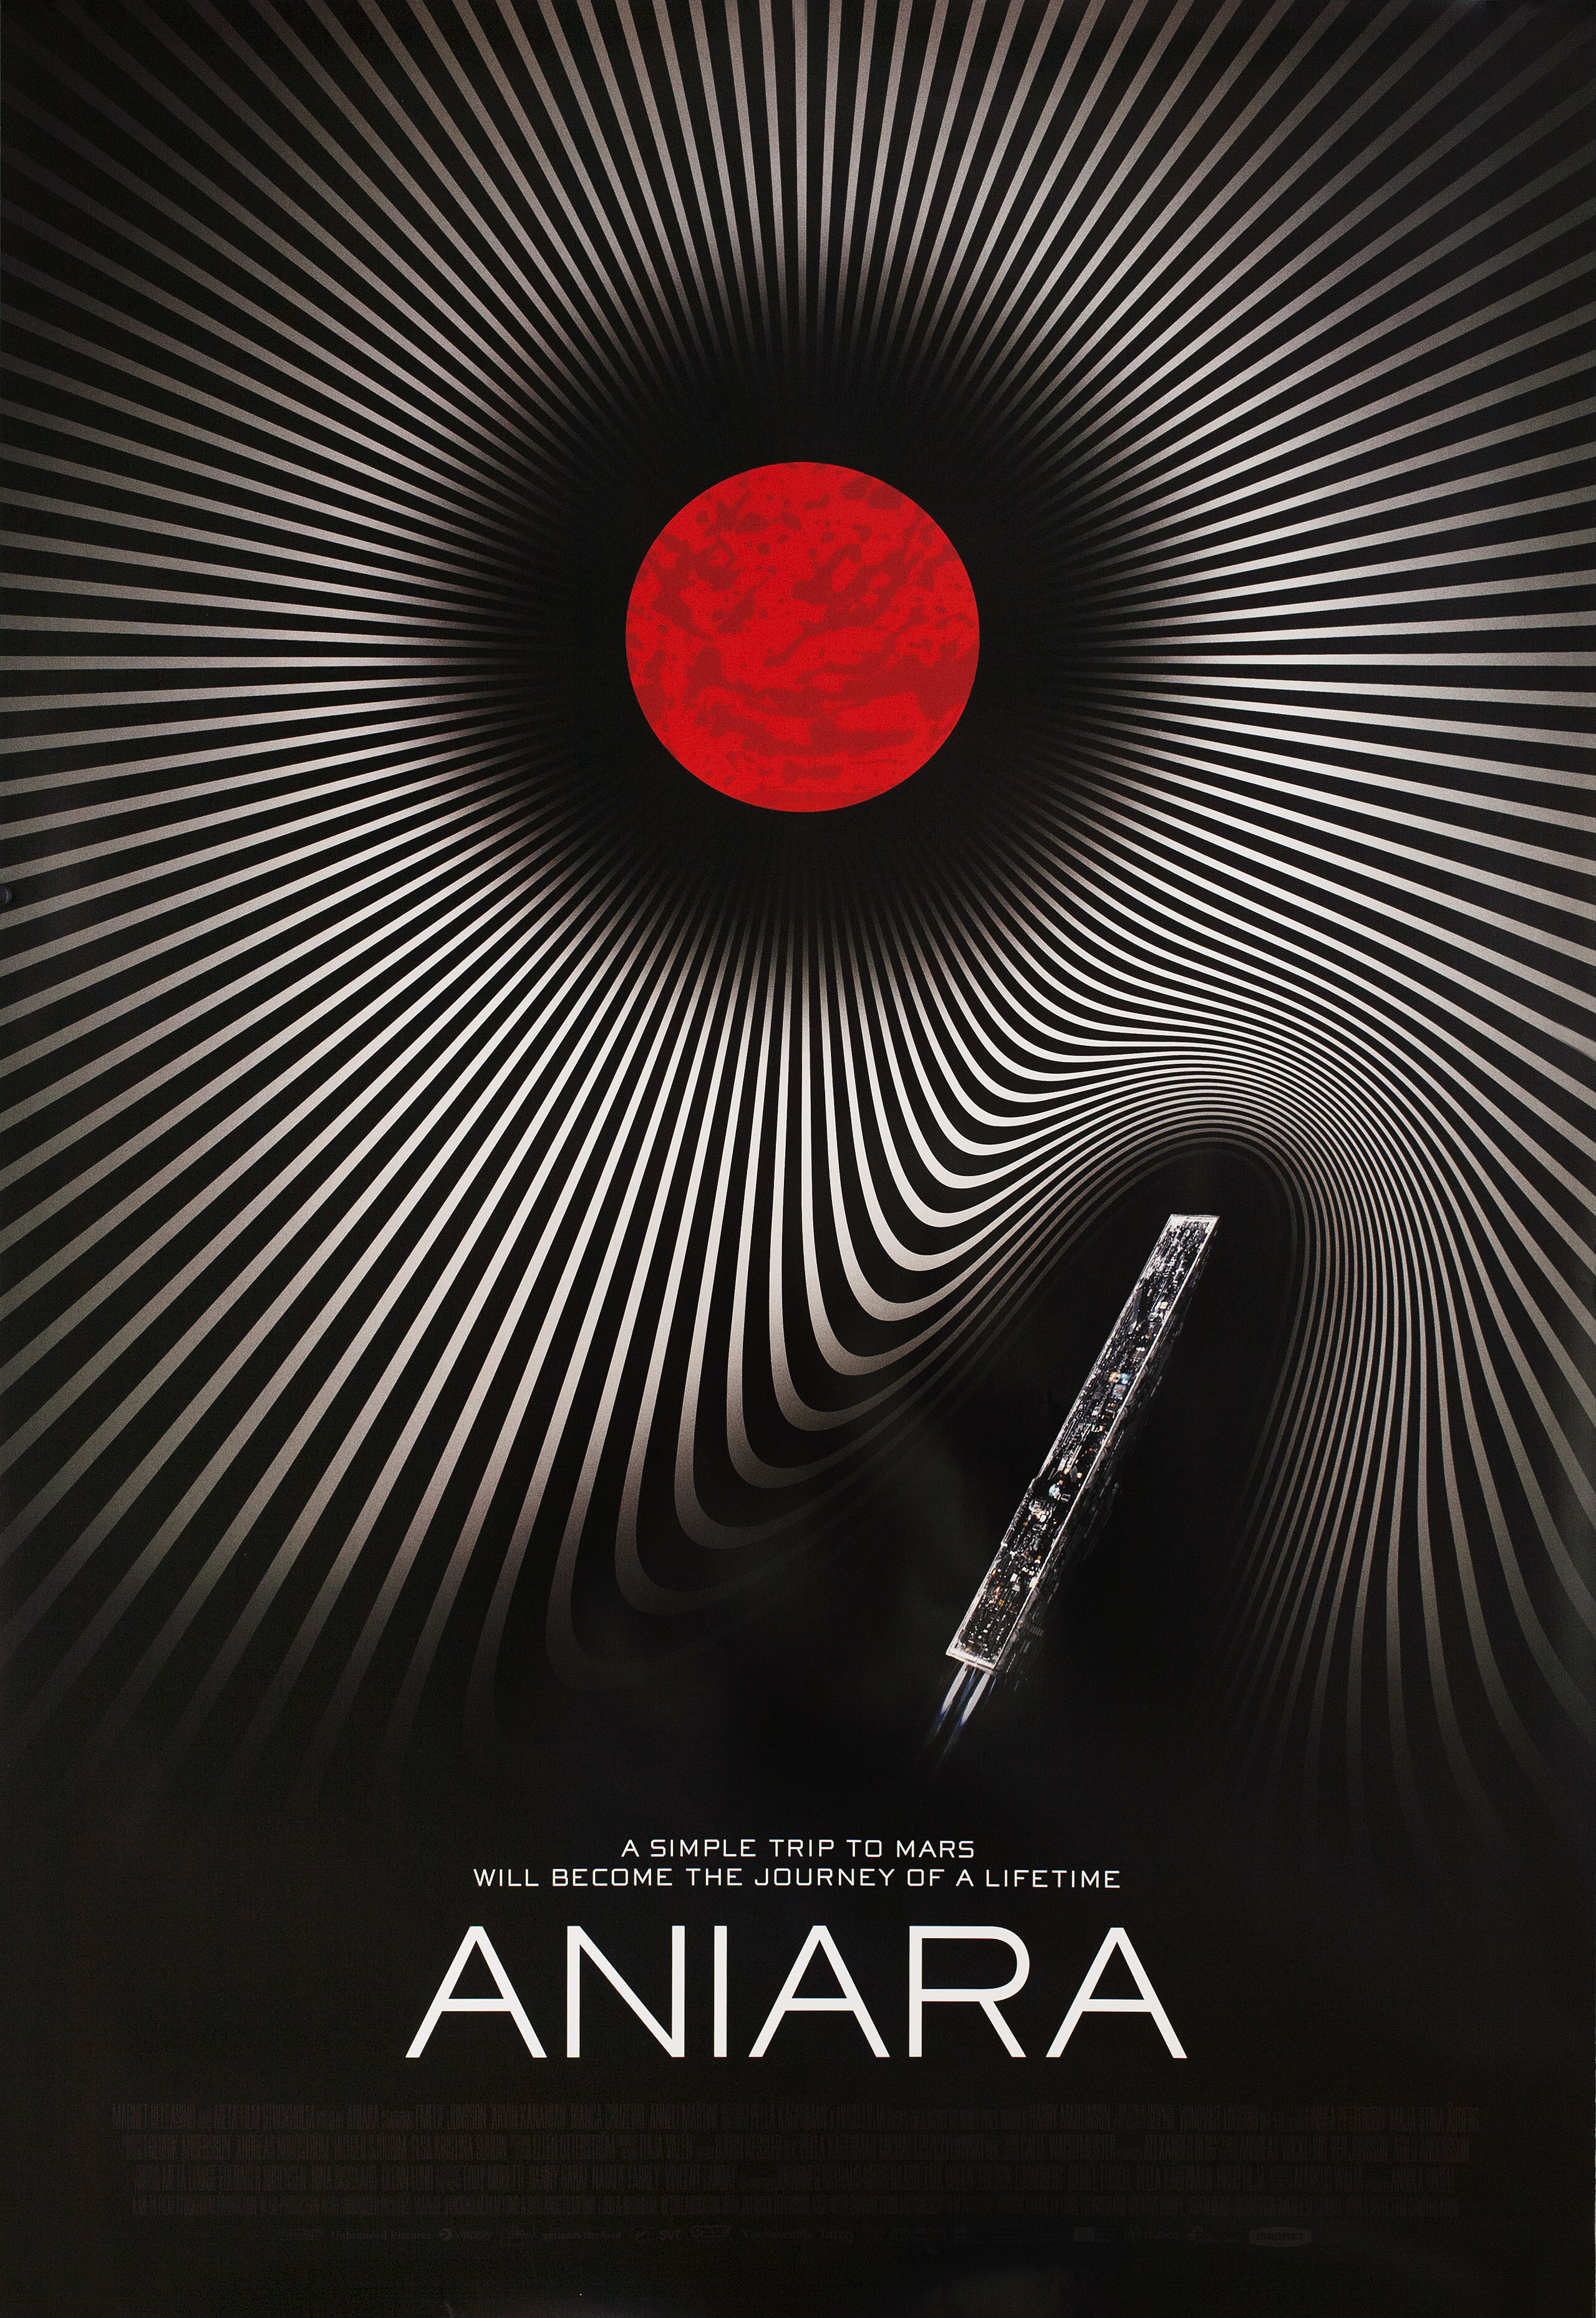 Аниара: Космическая обитель (Aniara), 2018 год, режиссёр Пелла Кагерман, минималистичный постер к фильму (США, 2019 год)